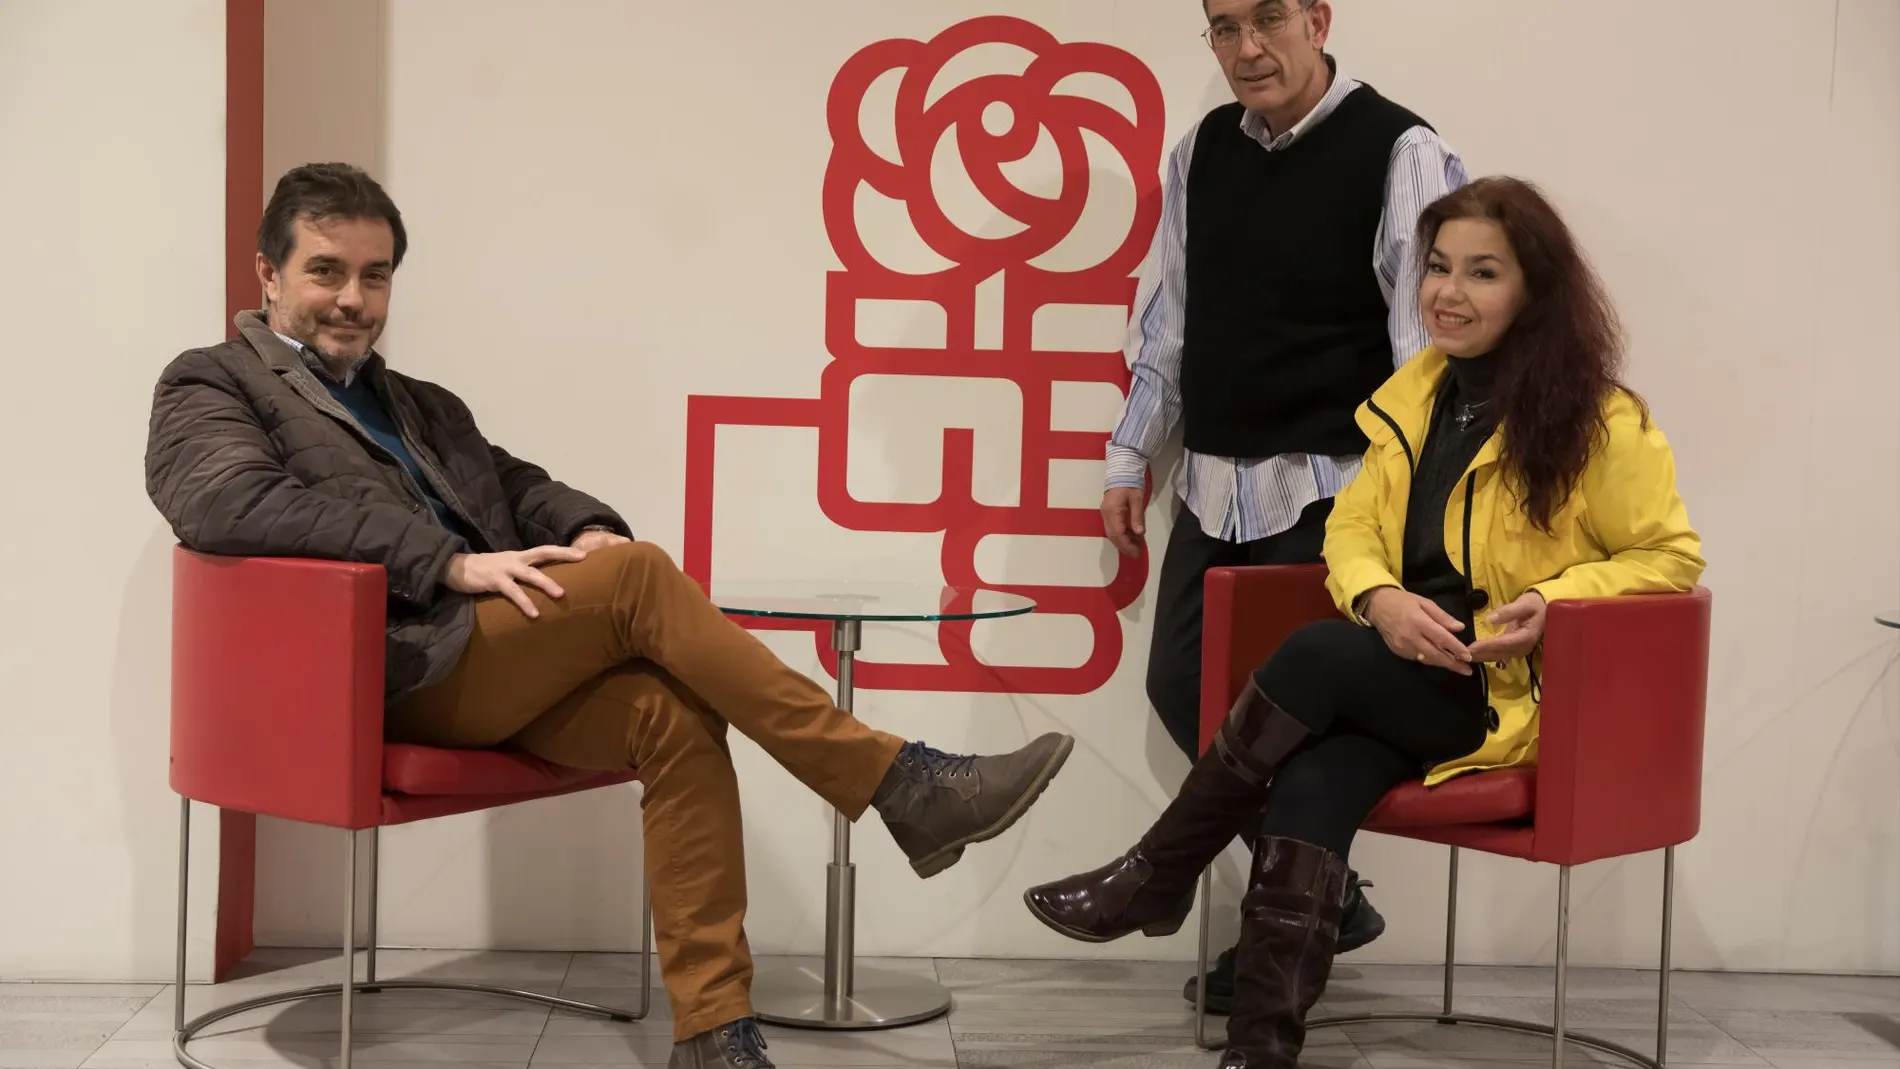 Jorge Fernández, Juan Carlos González y María Muñoz, representantes del grupo Cristianos Socialistas del PSOE